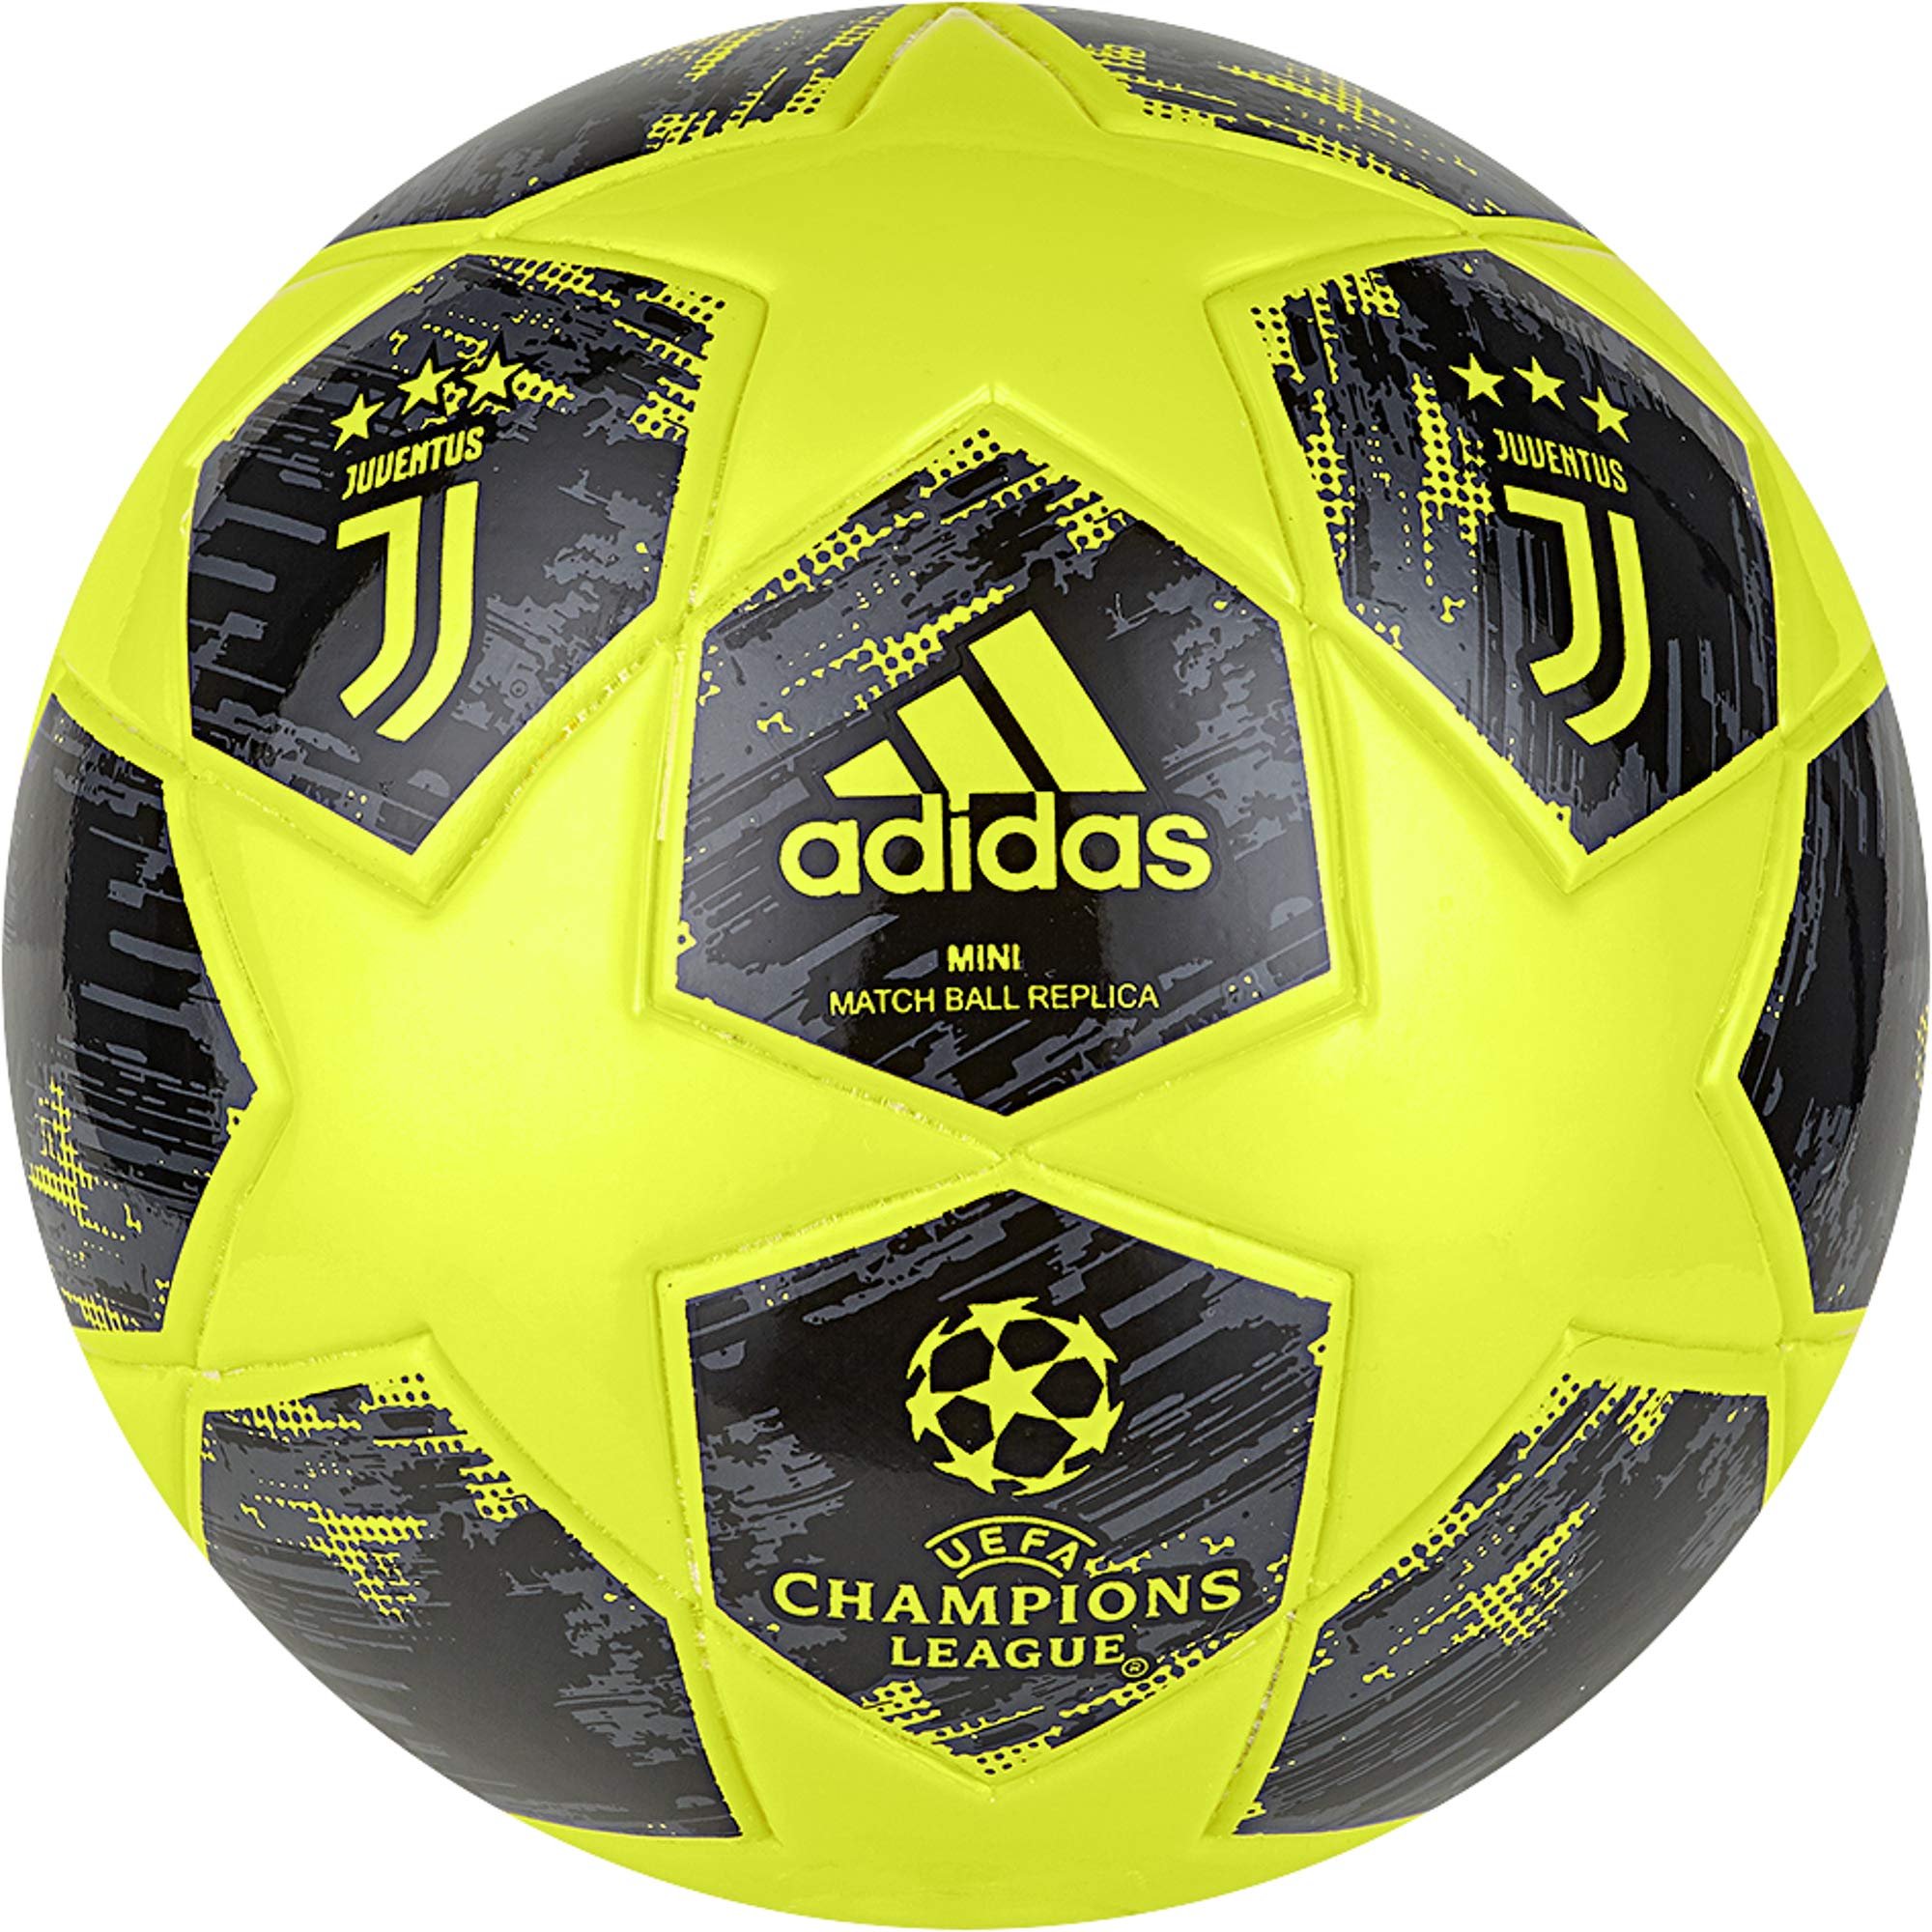 Купить мяч в спортмастере. Мяч футбольный adidas Capitano Juventus. Спортмастер мячи футбольные.